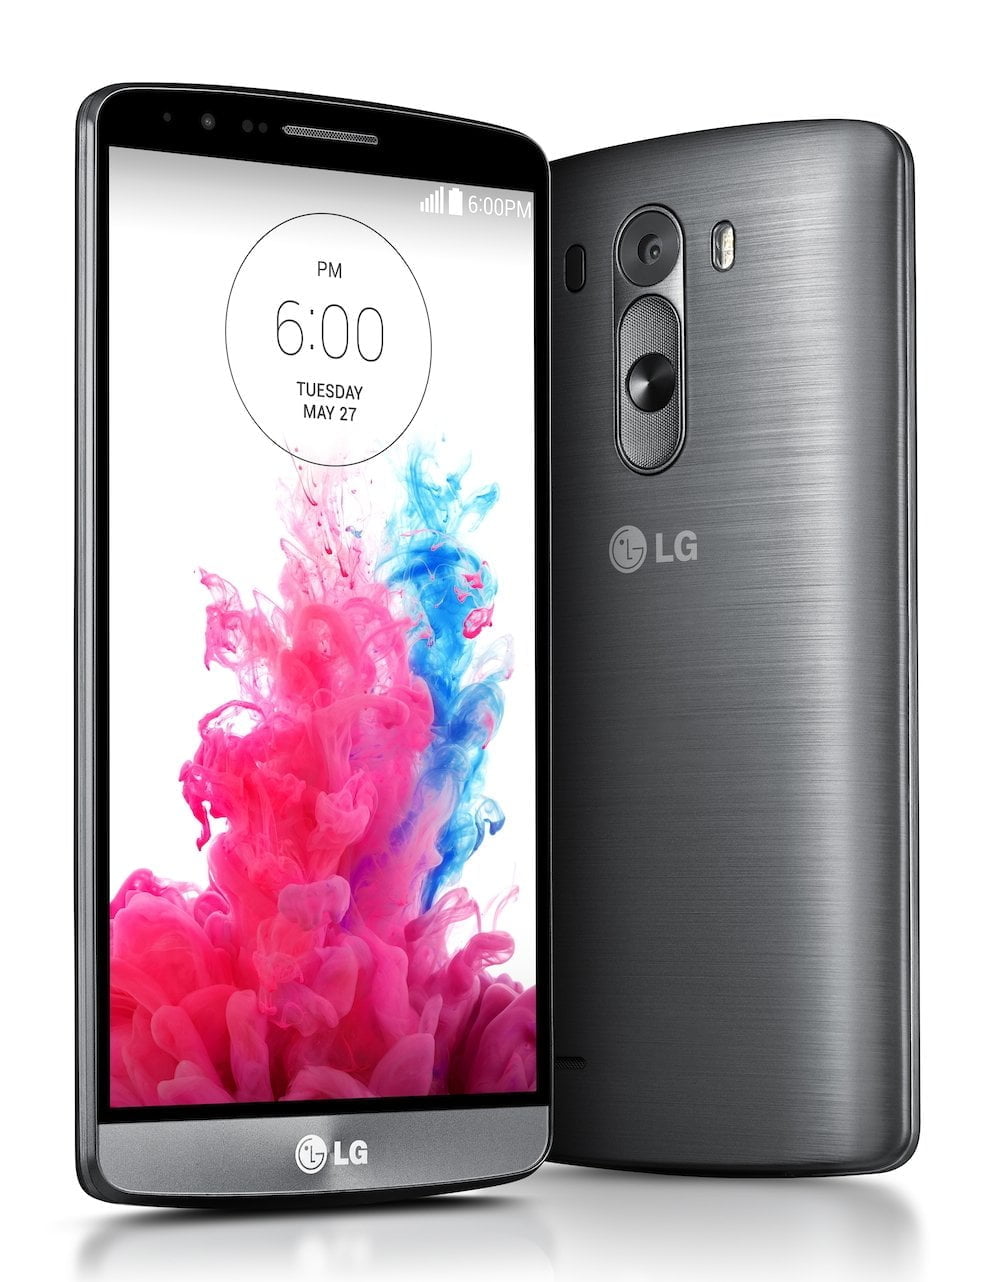 Spectaculair veel pixels in nieuw vlaggenschip van LG, de LG G3 1